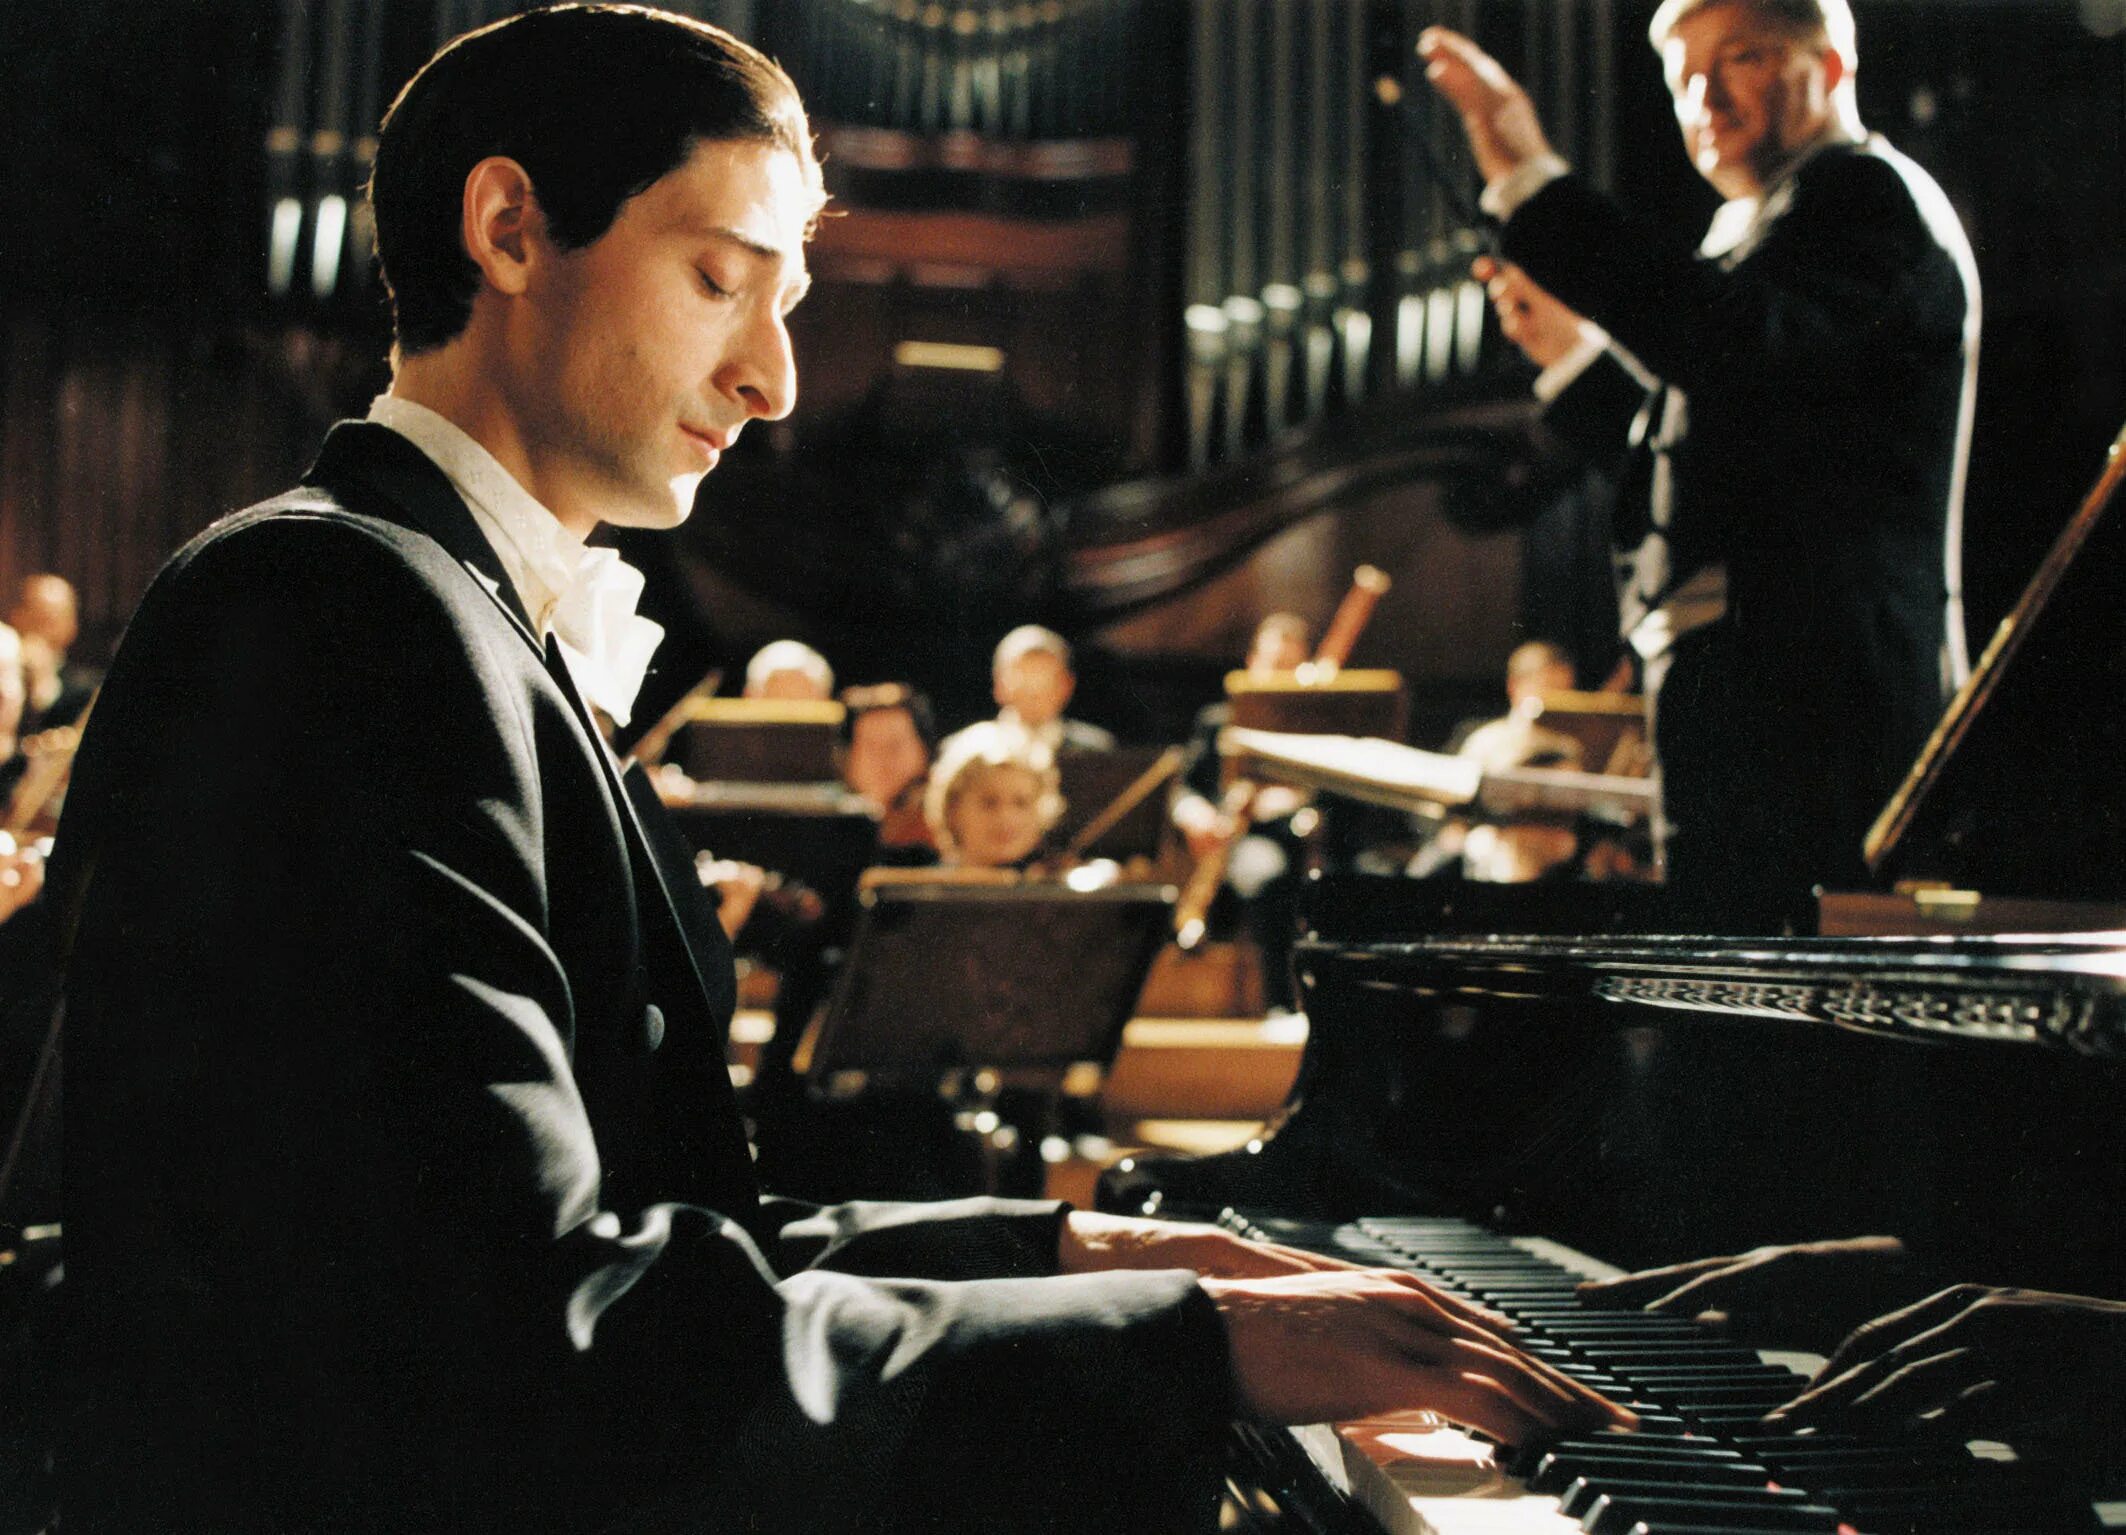 He plays the piano they. Пианист 2002 Эдриан Броуди. Пианист / the Pianist (2002).